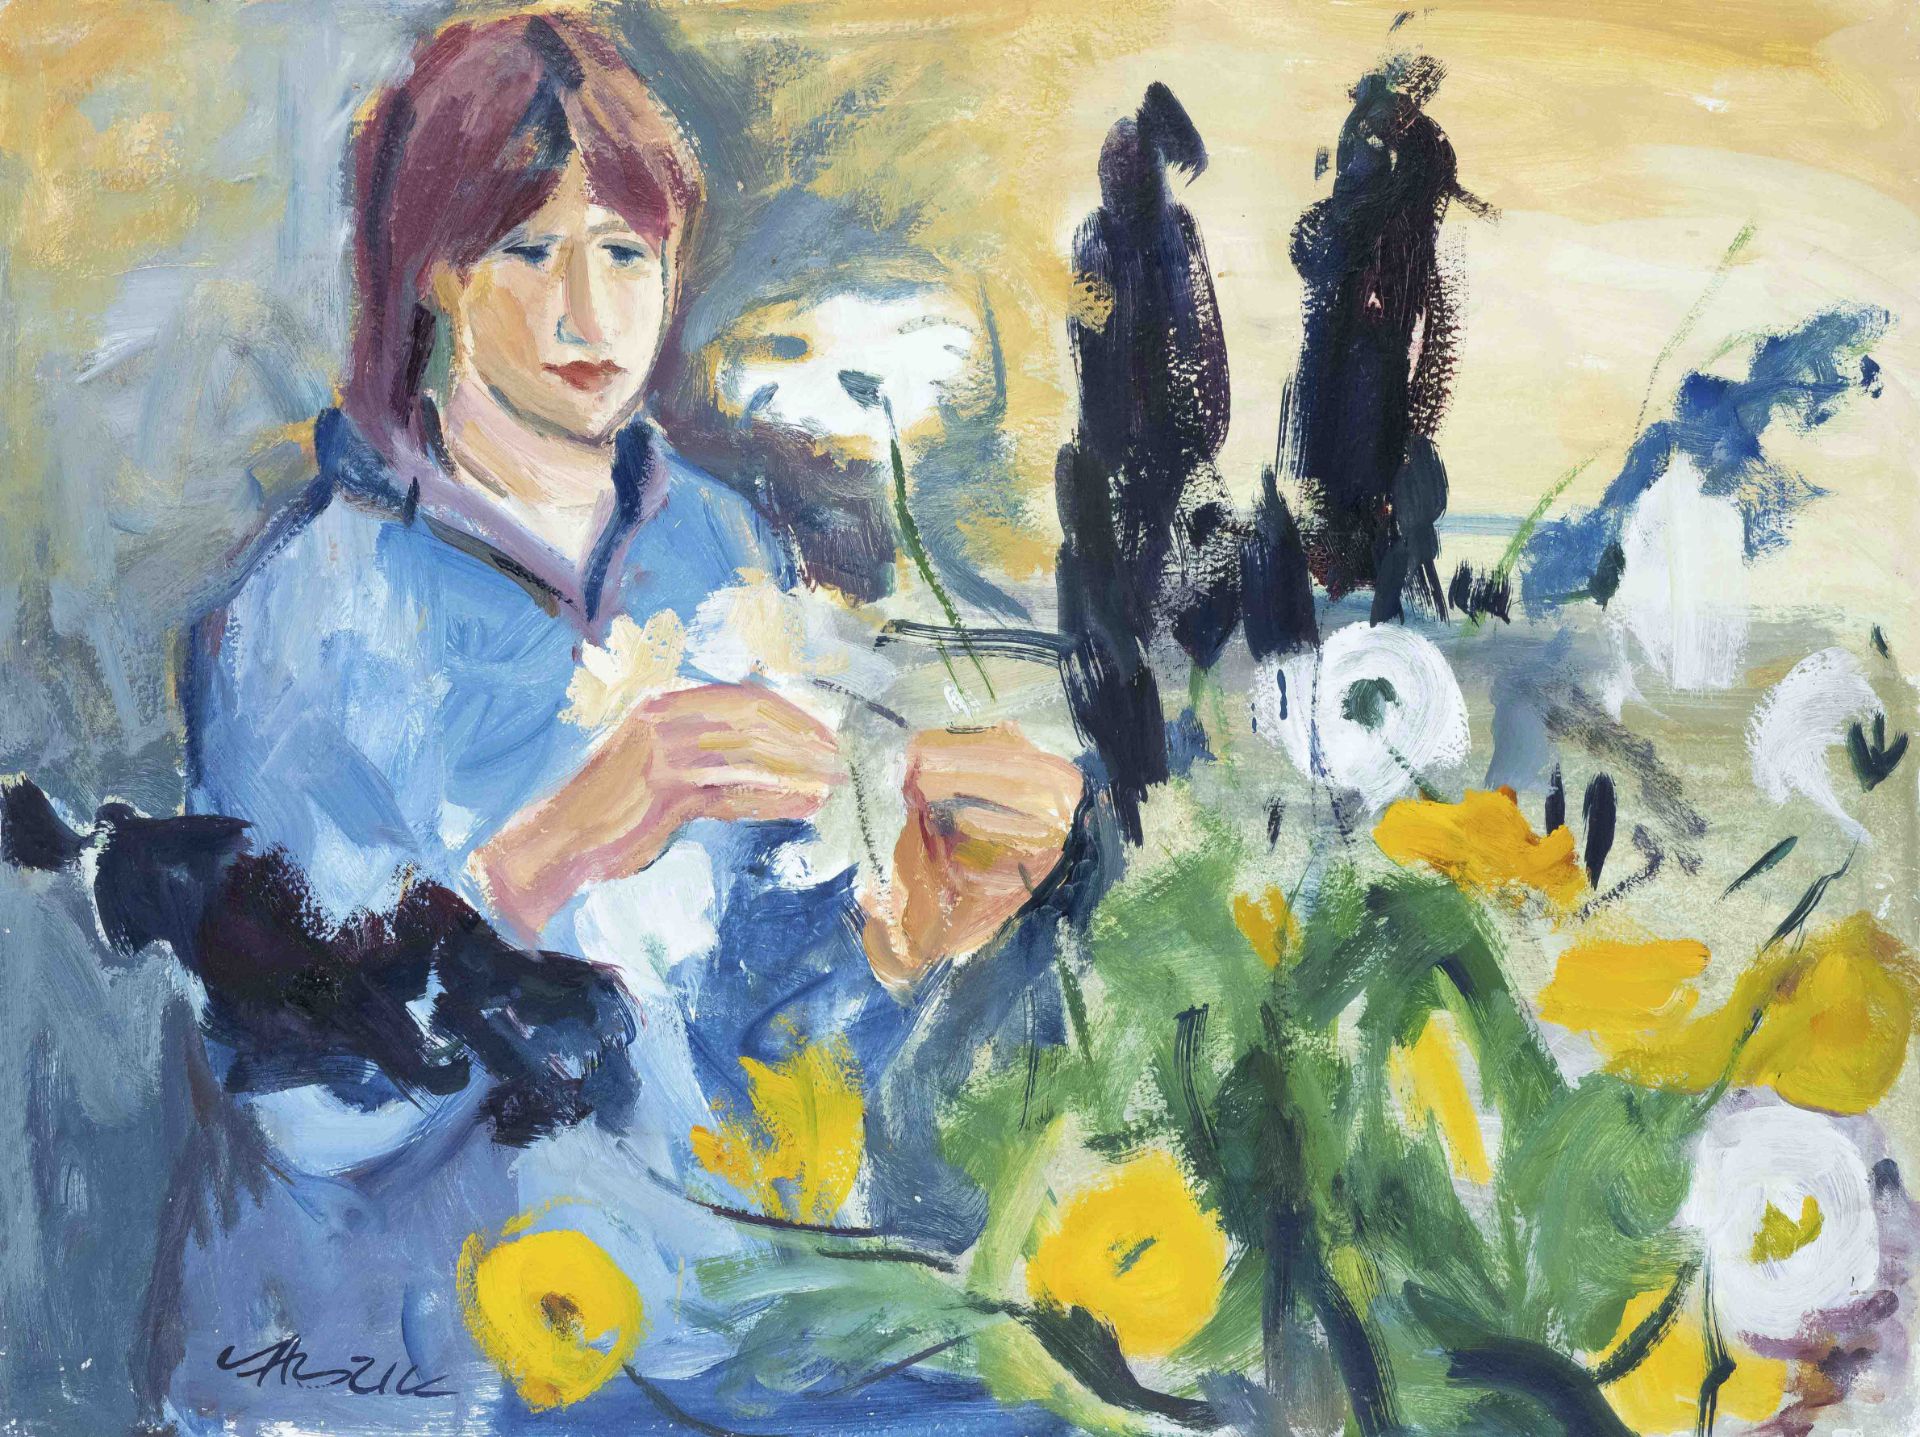 Gerd Kadzik (*1929), German painter from Mannheim, lives and works in Affinghausen, Mädchen auf